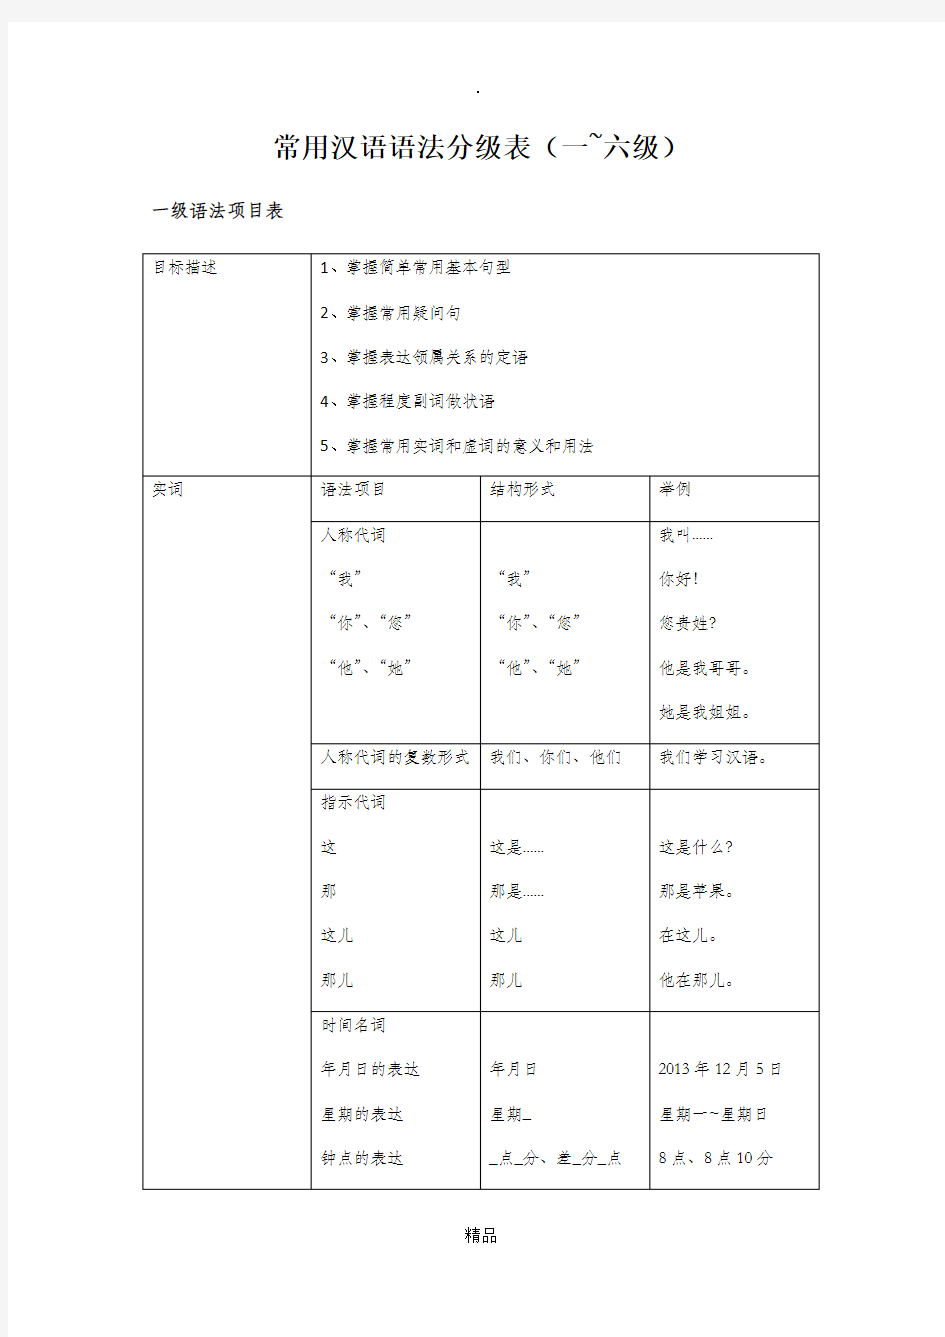 常用汉语语法分级表(修订版)